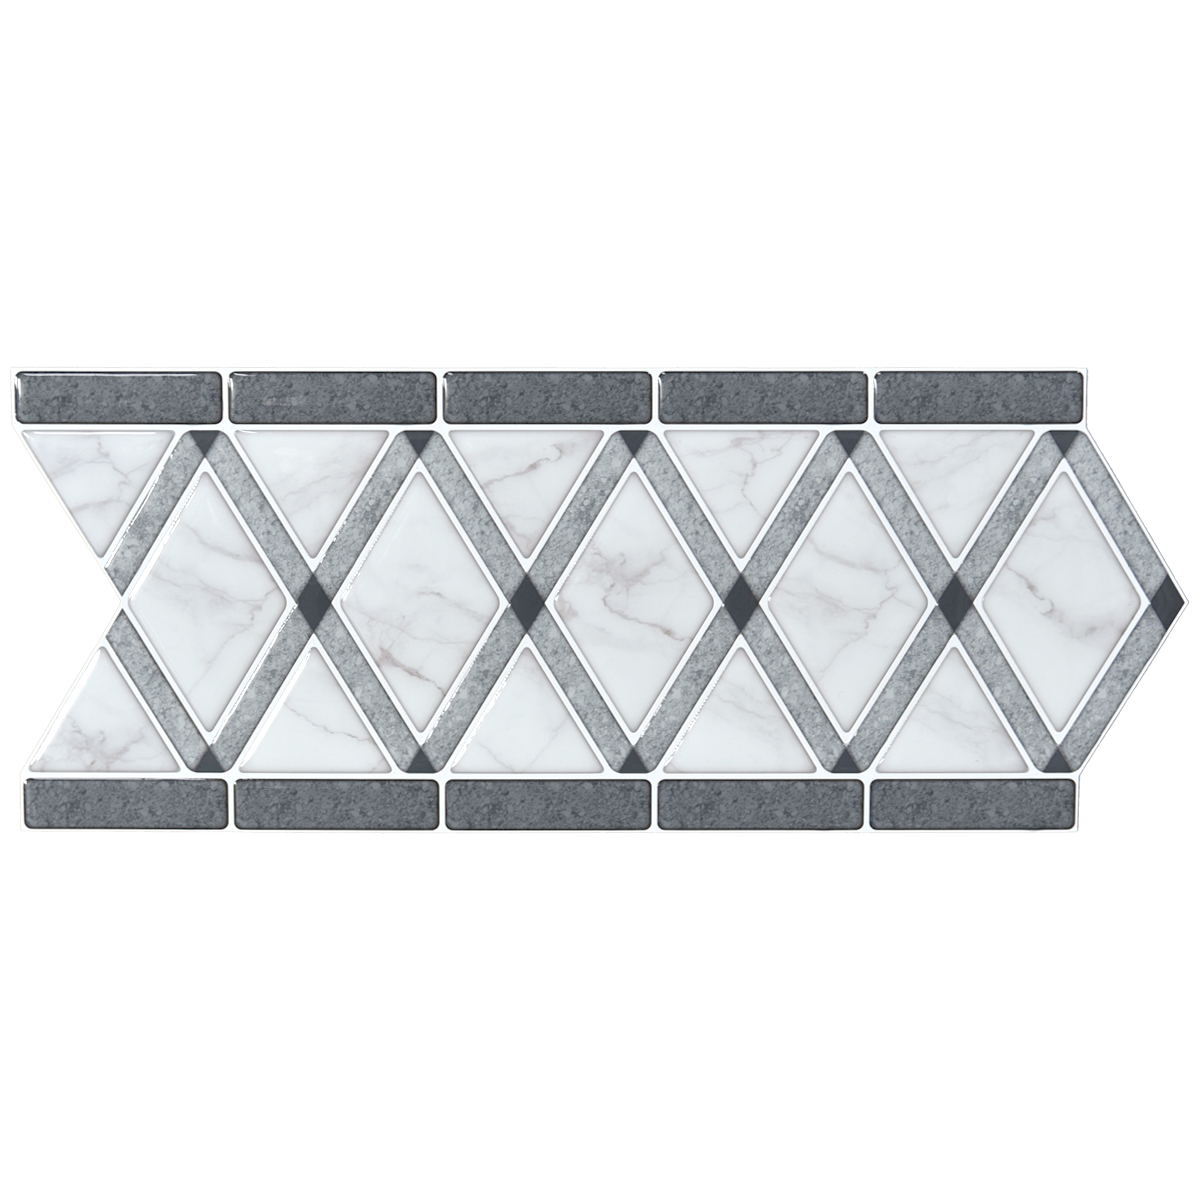 A17101 - Tile Borders Peel and Stick Backsplash, Removable Backsplash for Kitchen, Bathroom, Set of 10, 12.4